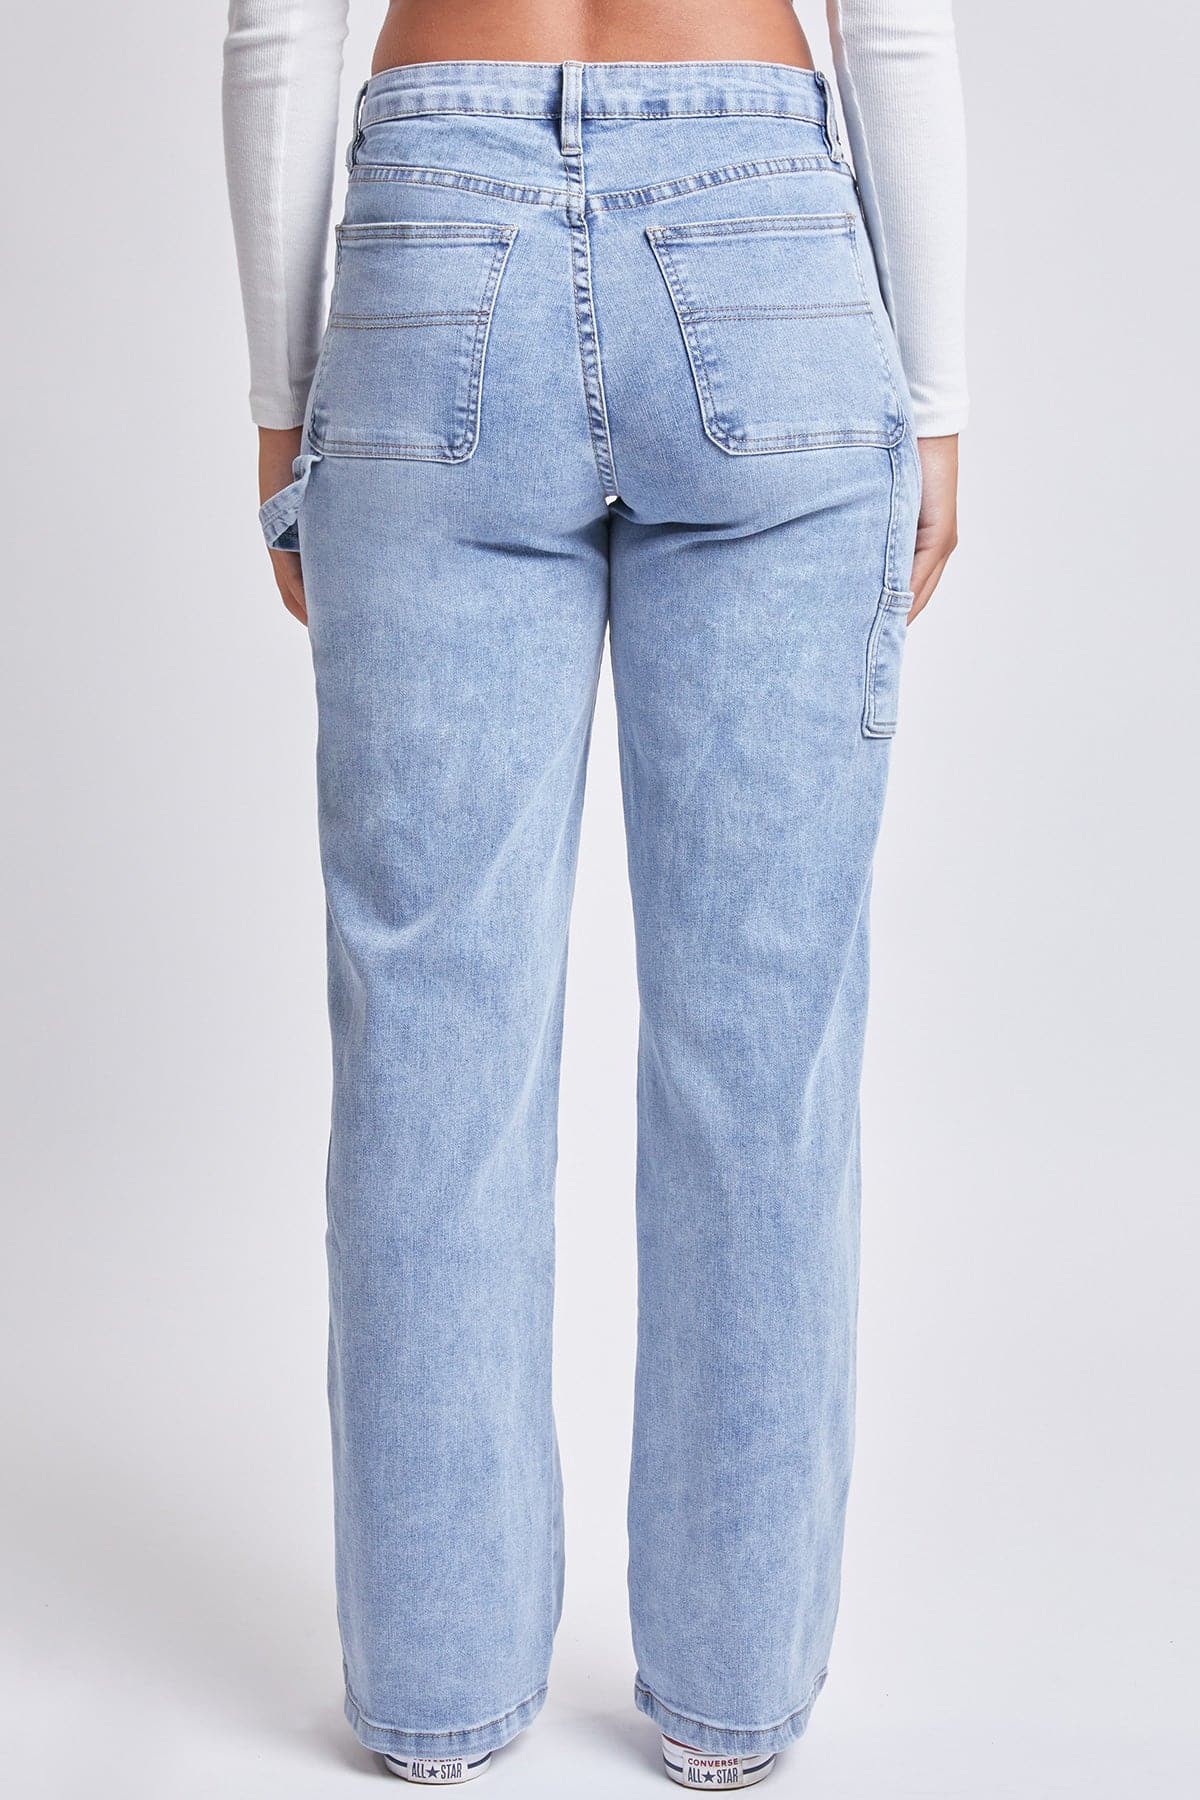 Women's High Rise Straight Leg Carpenter Jeans